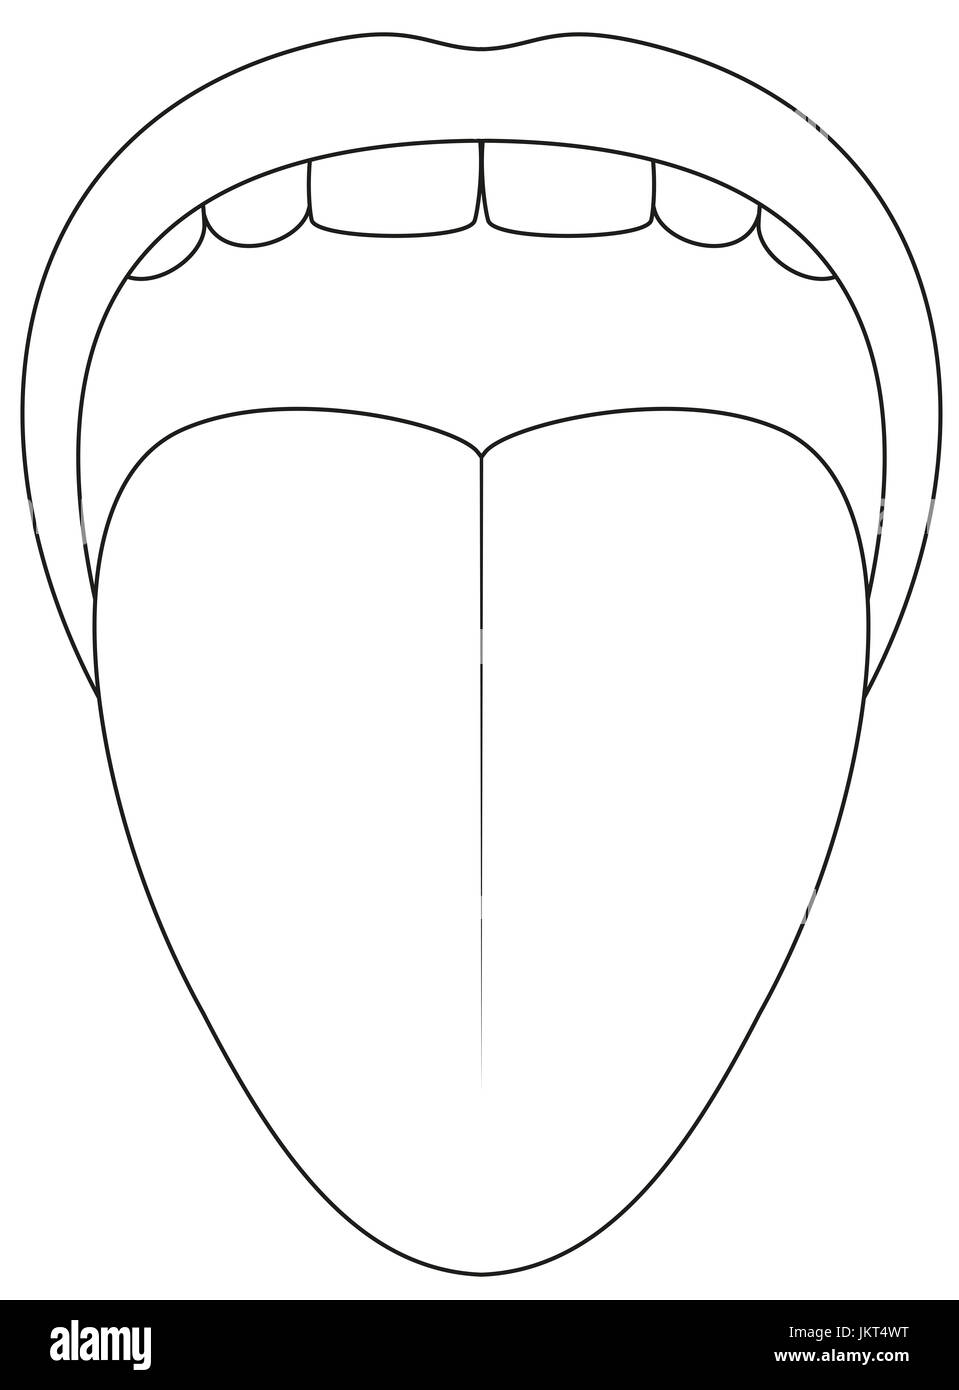 Tongue symbol - outline icon illustration on white background. Stock Photo